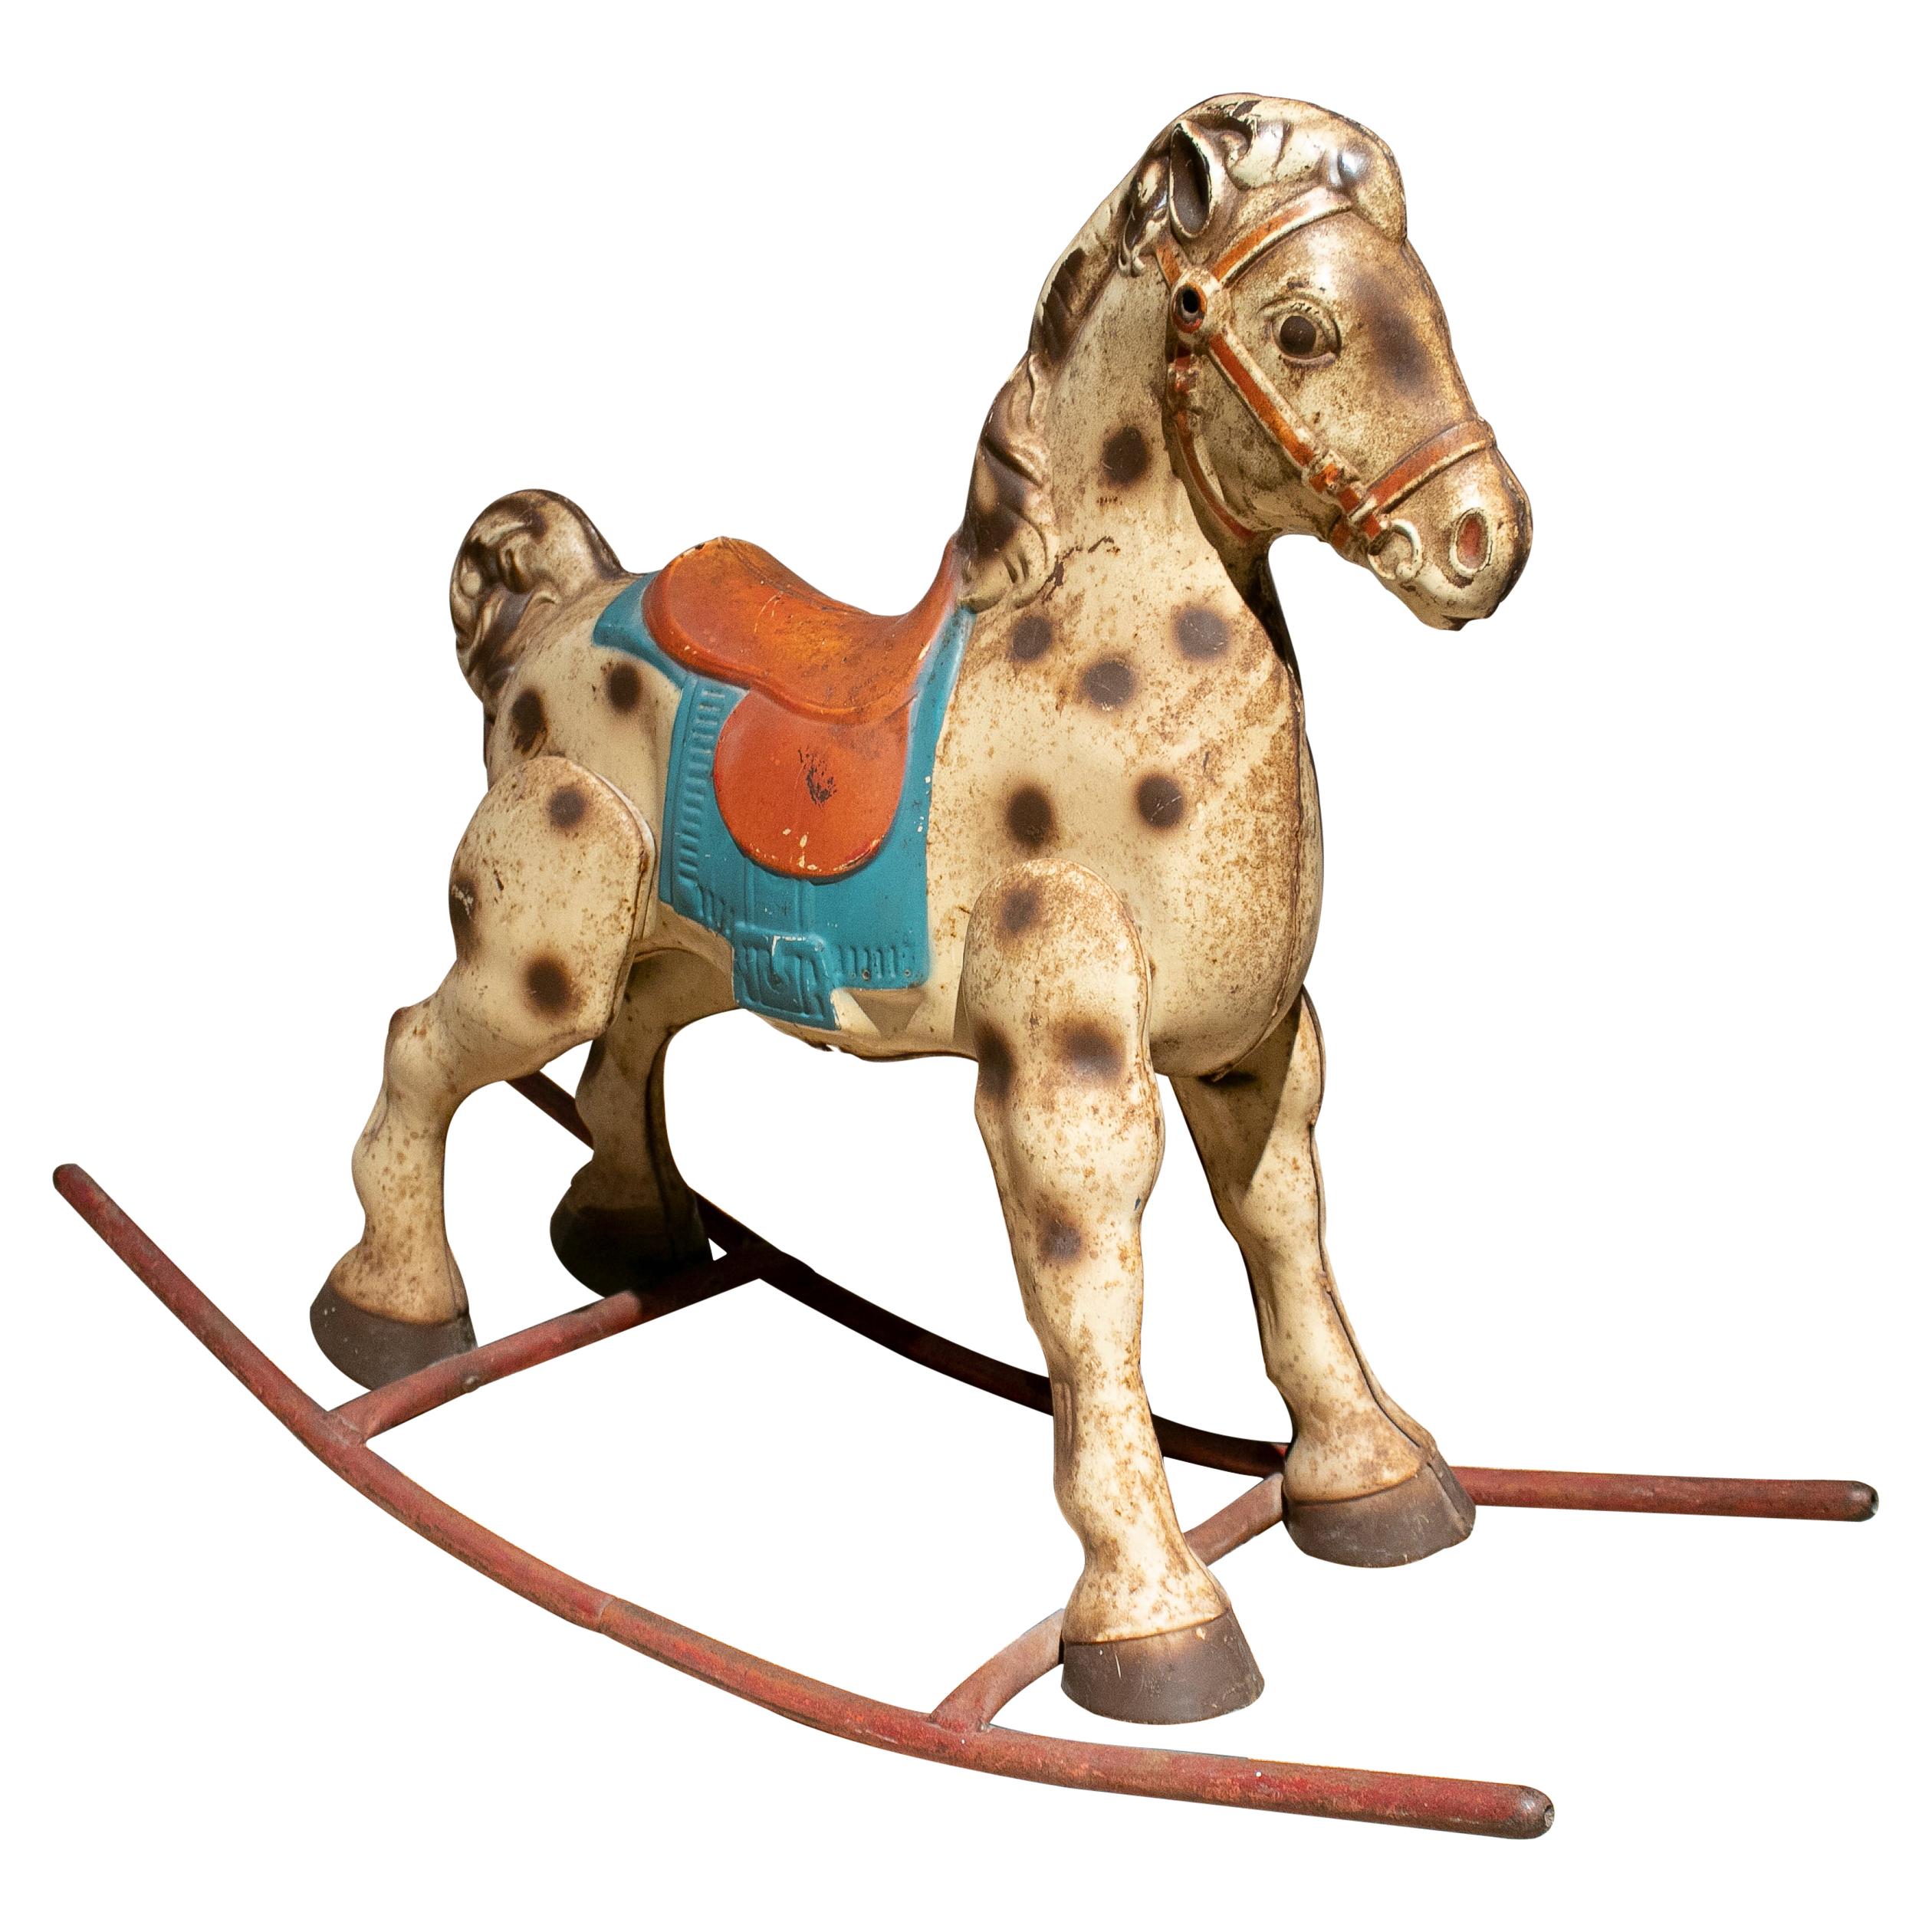 1940s Spanish Children's Metal Toy Rocking Horse